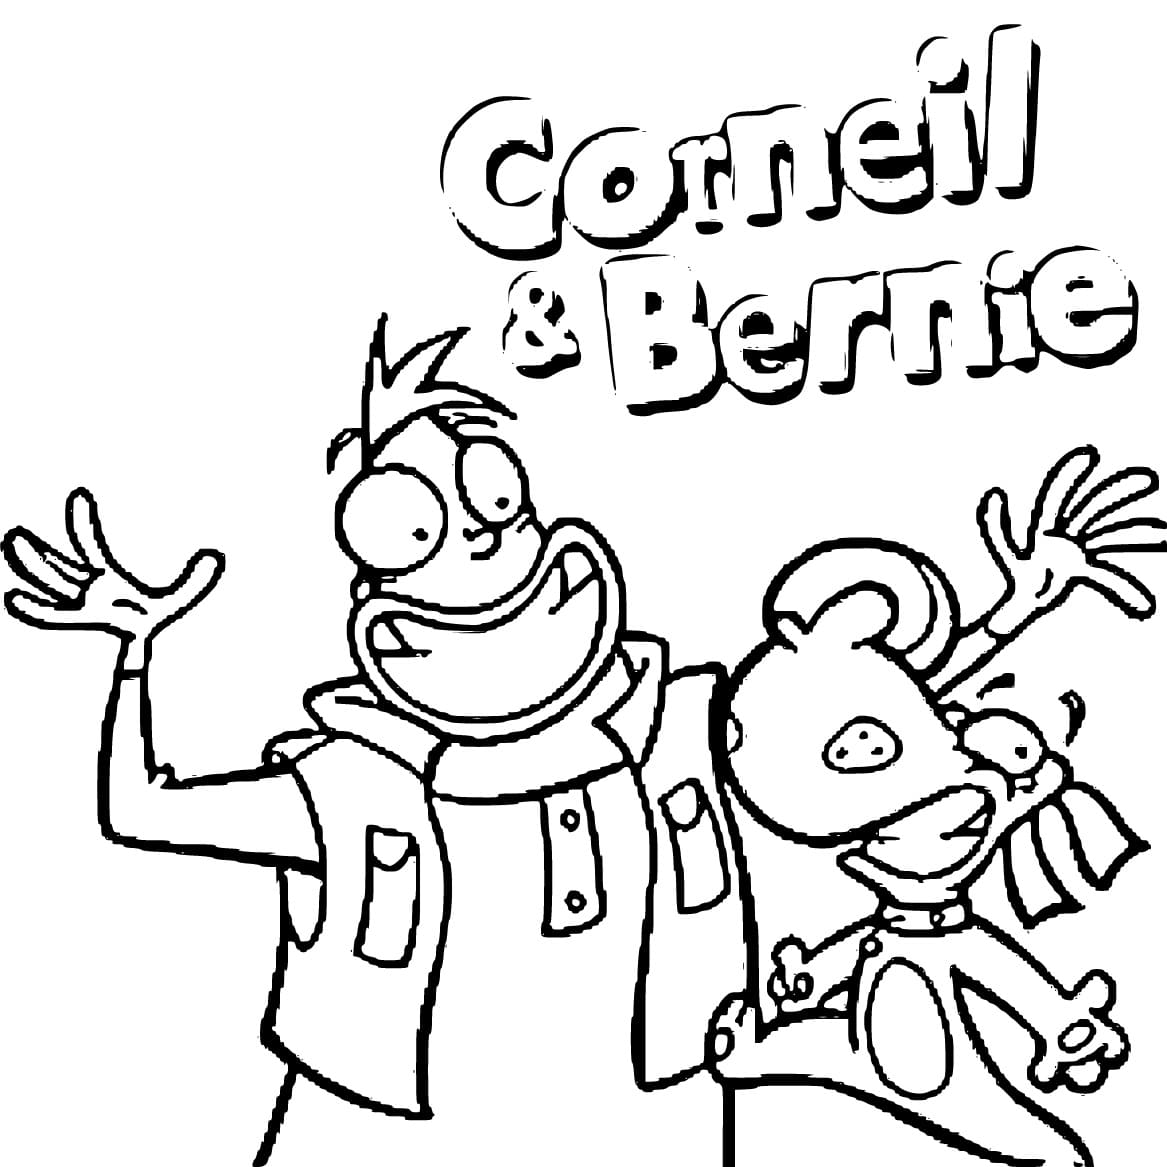 Dessin Gratuit de Corneil et Bernie coloring page